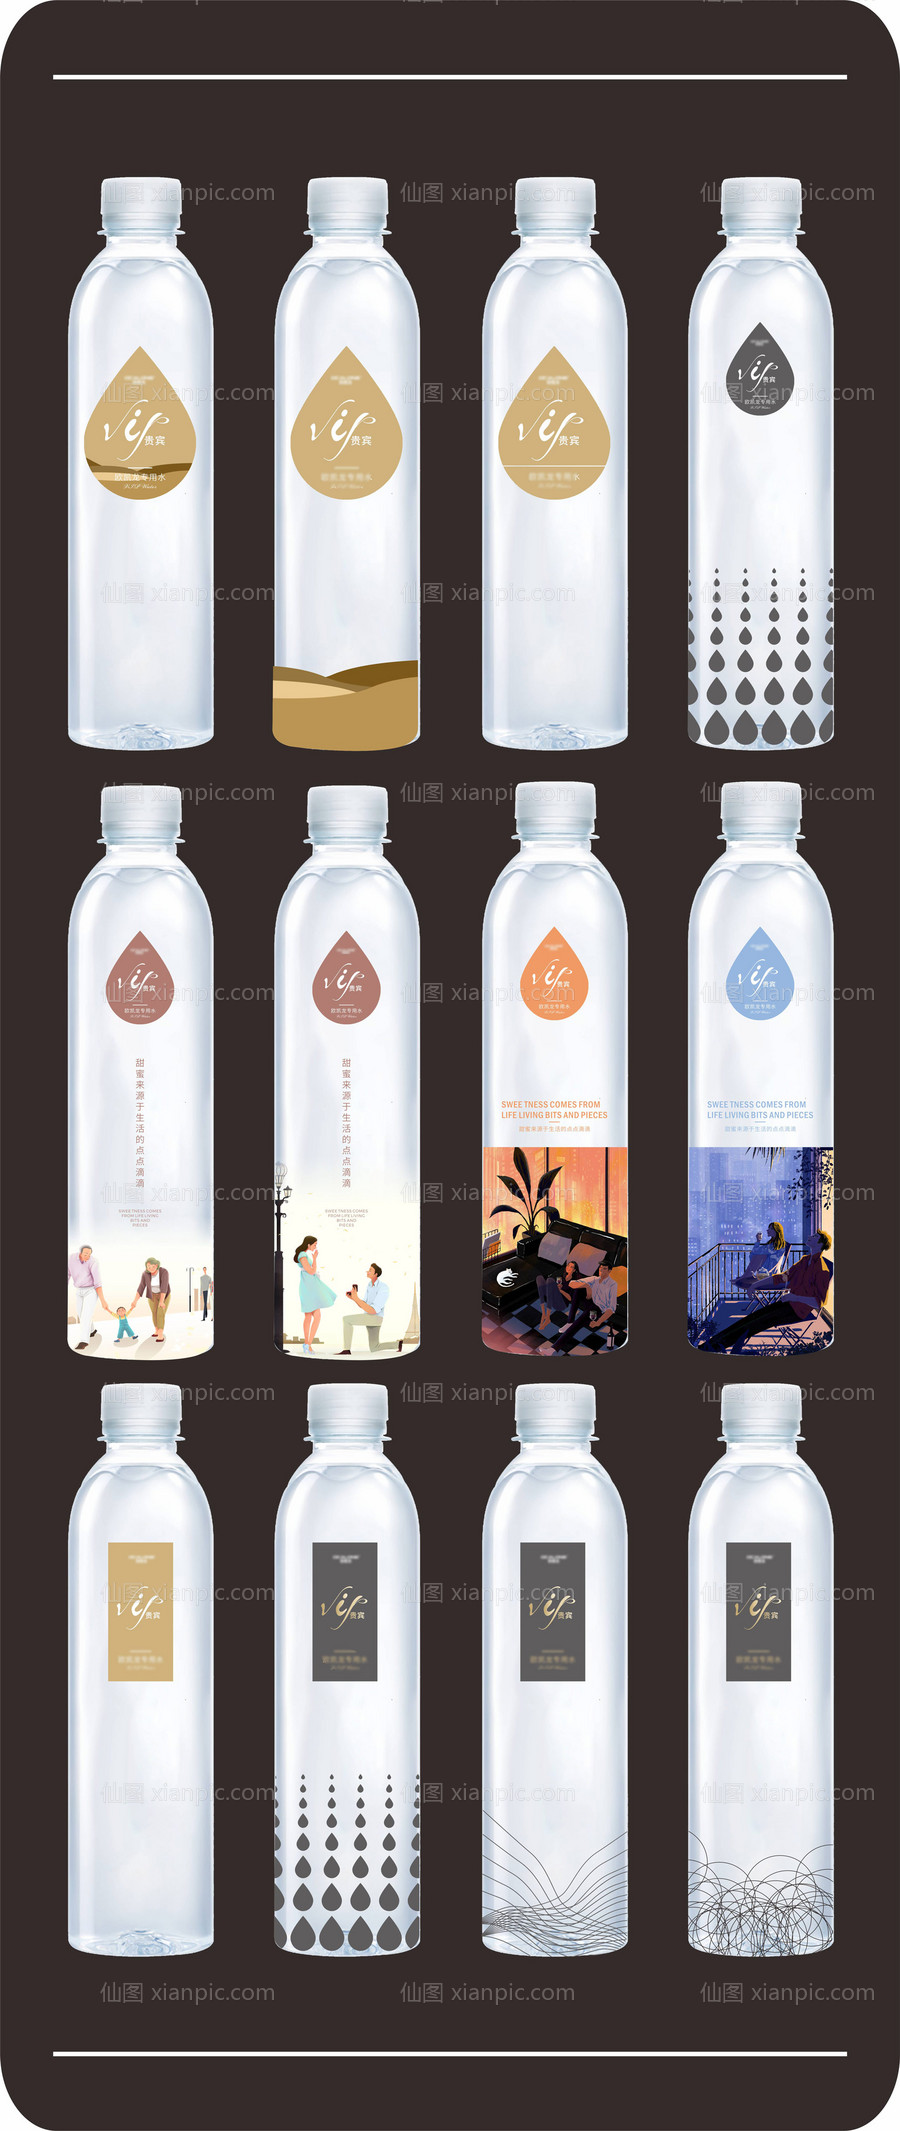 仙图网-矿泉水瓶包装设计